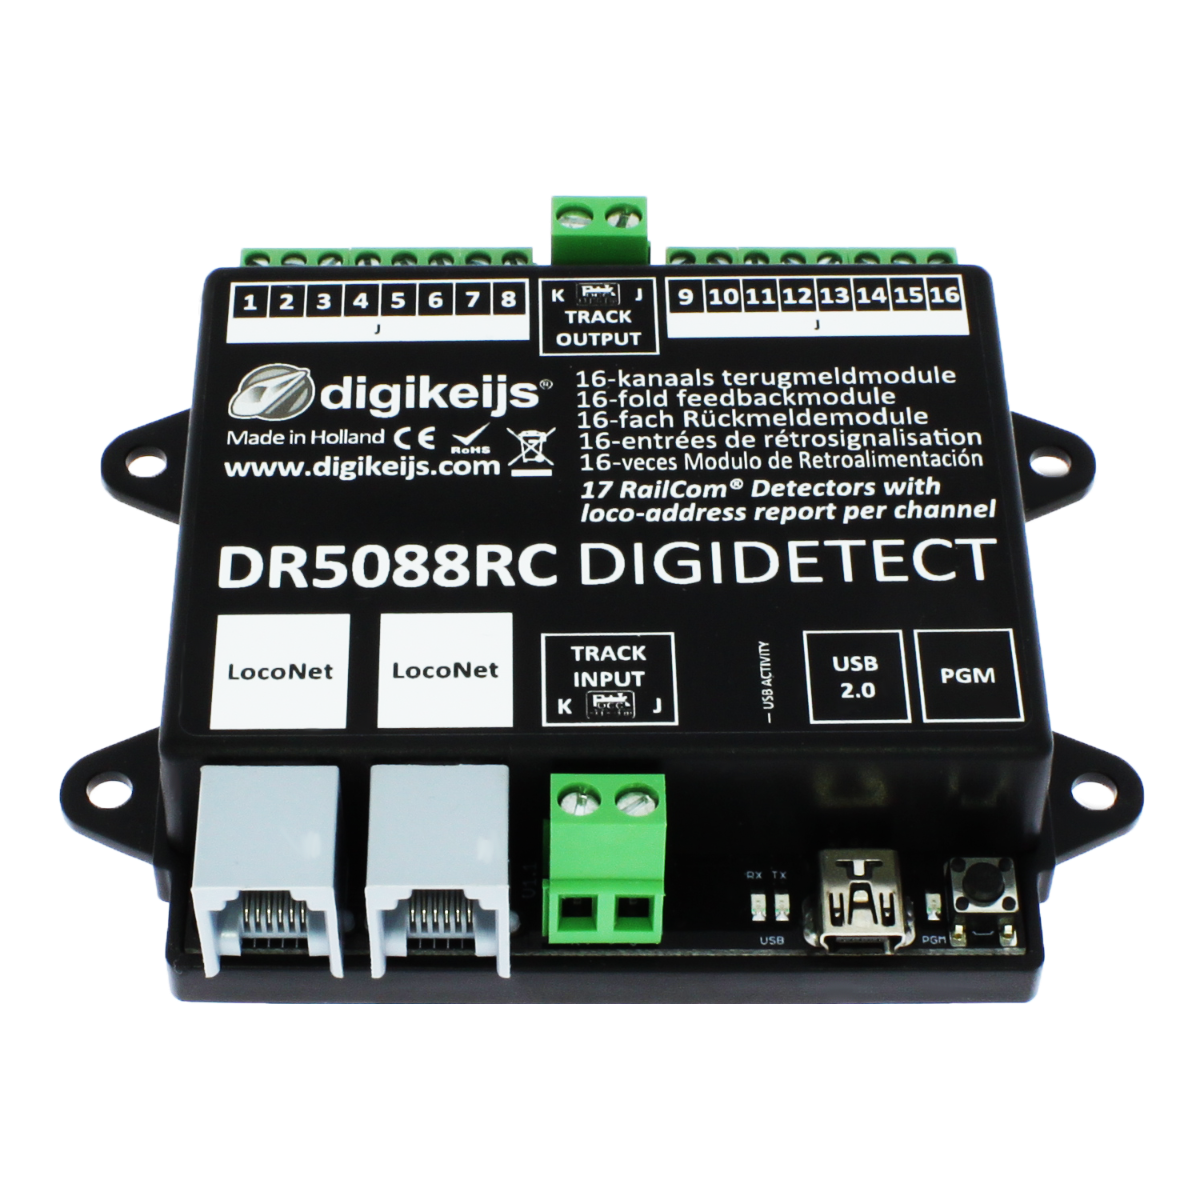 Digikeijs DR5088RC DIGIDETECT 16 fach RAILCOM Rueckmeldemodul mit Belegungserkennung